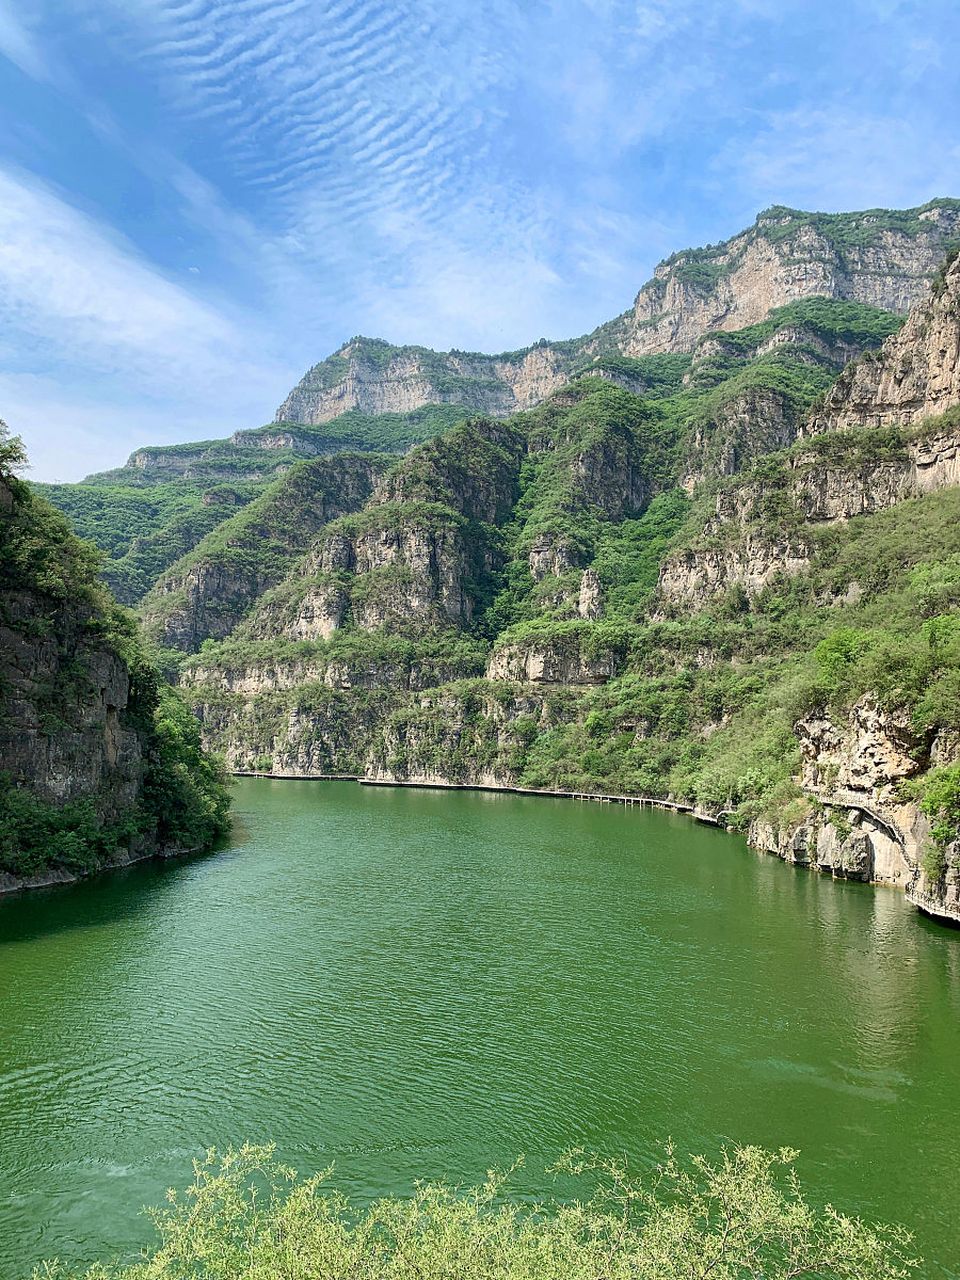 河南安阳林州万泉湖景区是一个集自然风光,文化古迹,休闲娱乐为一体的